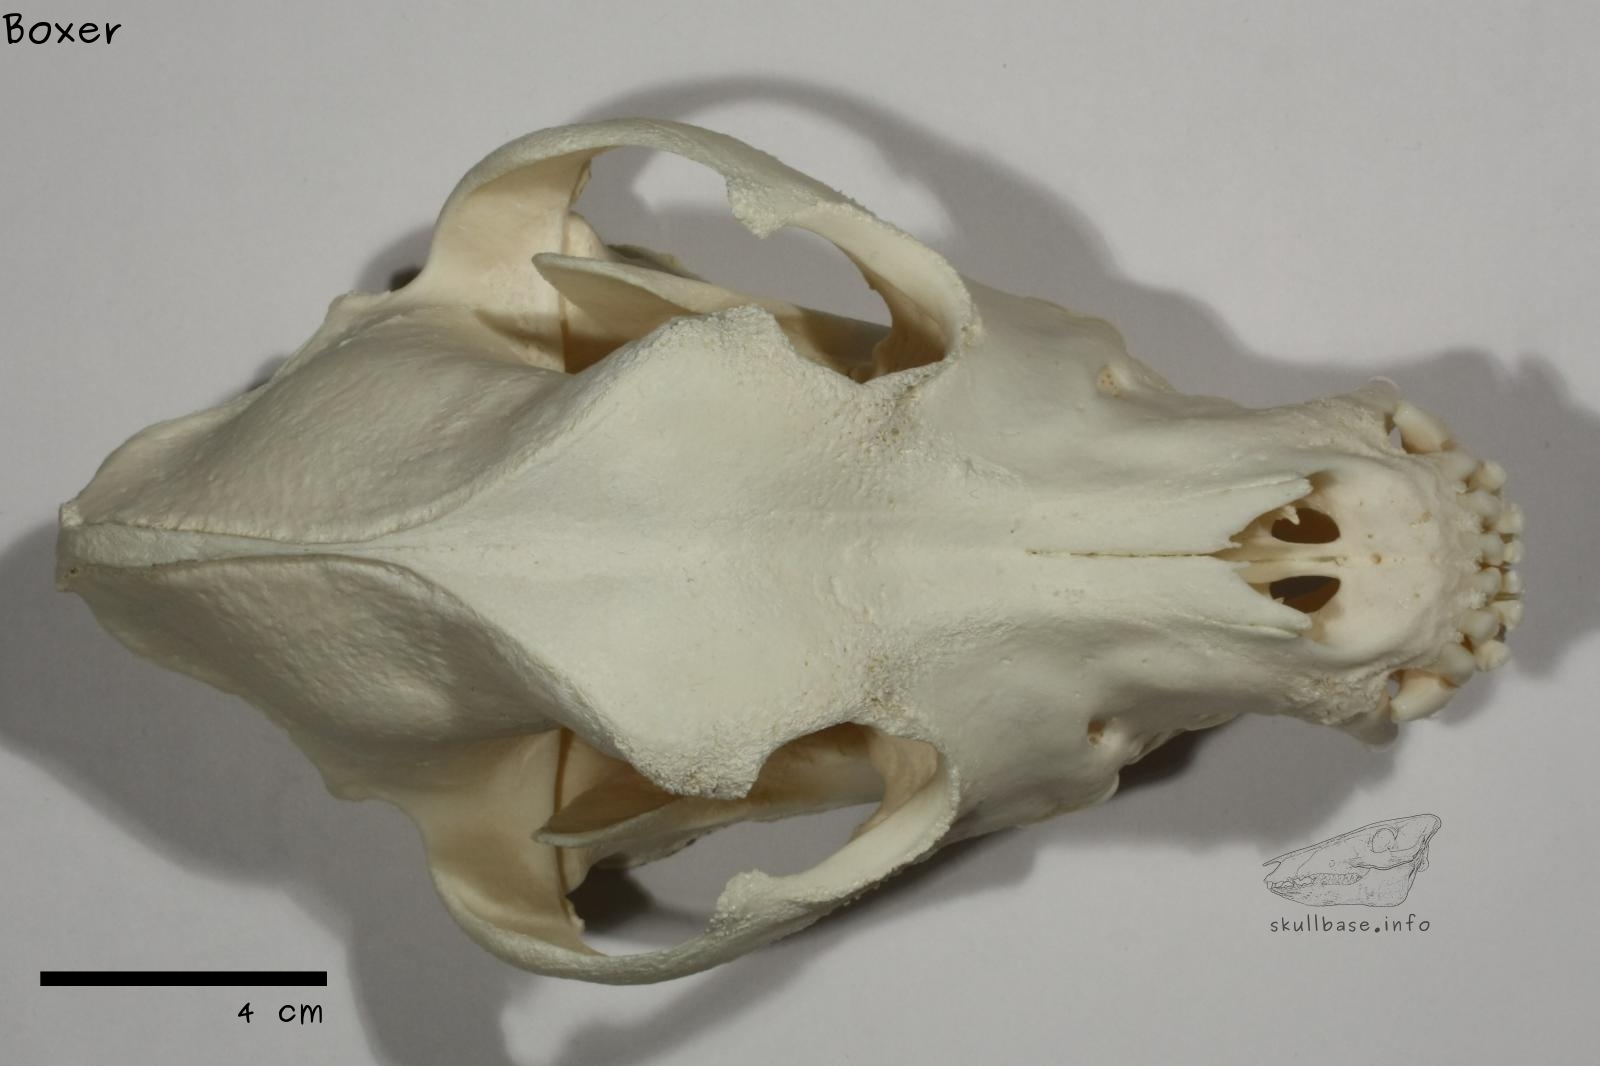 Boxer (Canis lupus familiaris) skull dorsal view